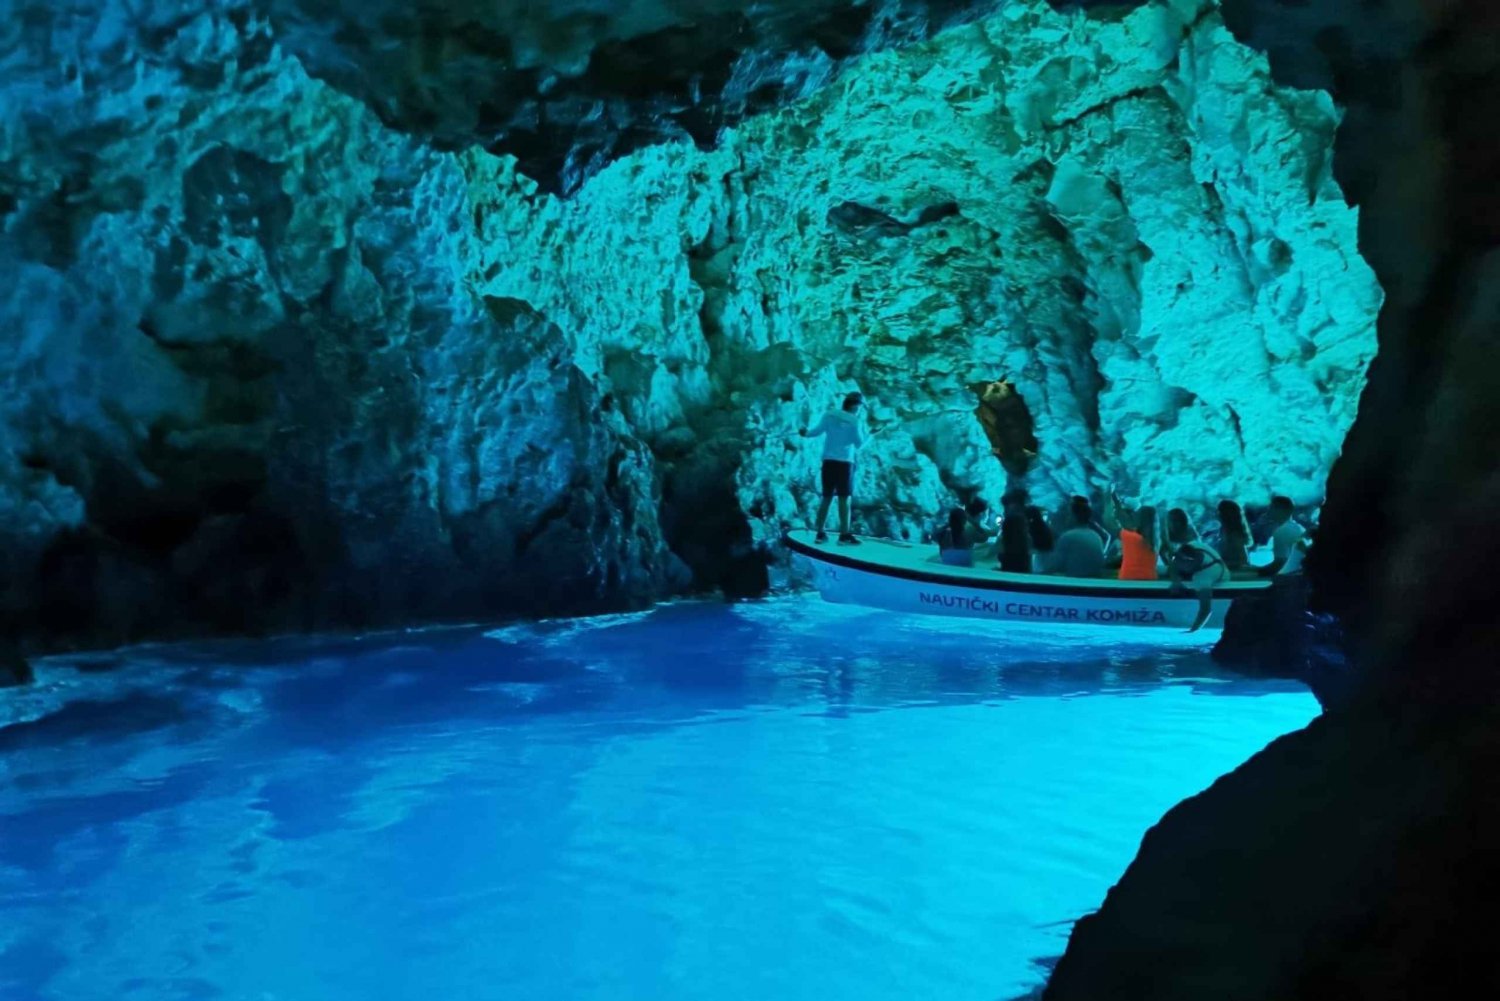 Split or Trogir: Blue Cave, Vis, and Hvar Speedboat Tour